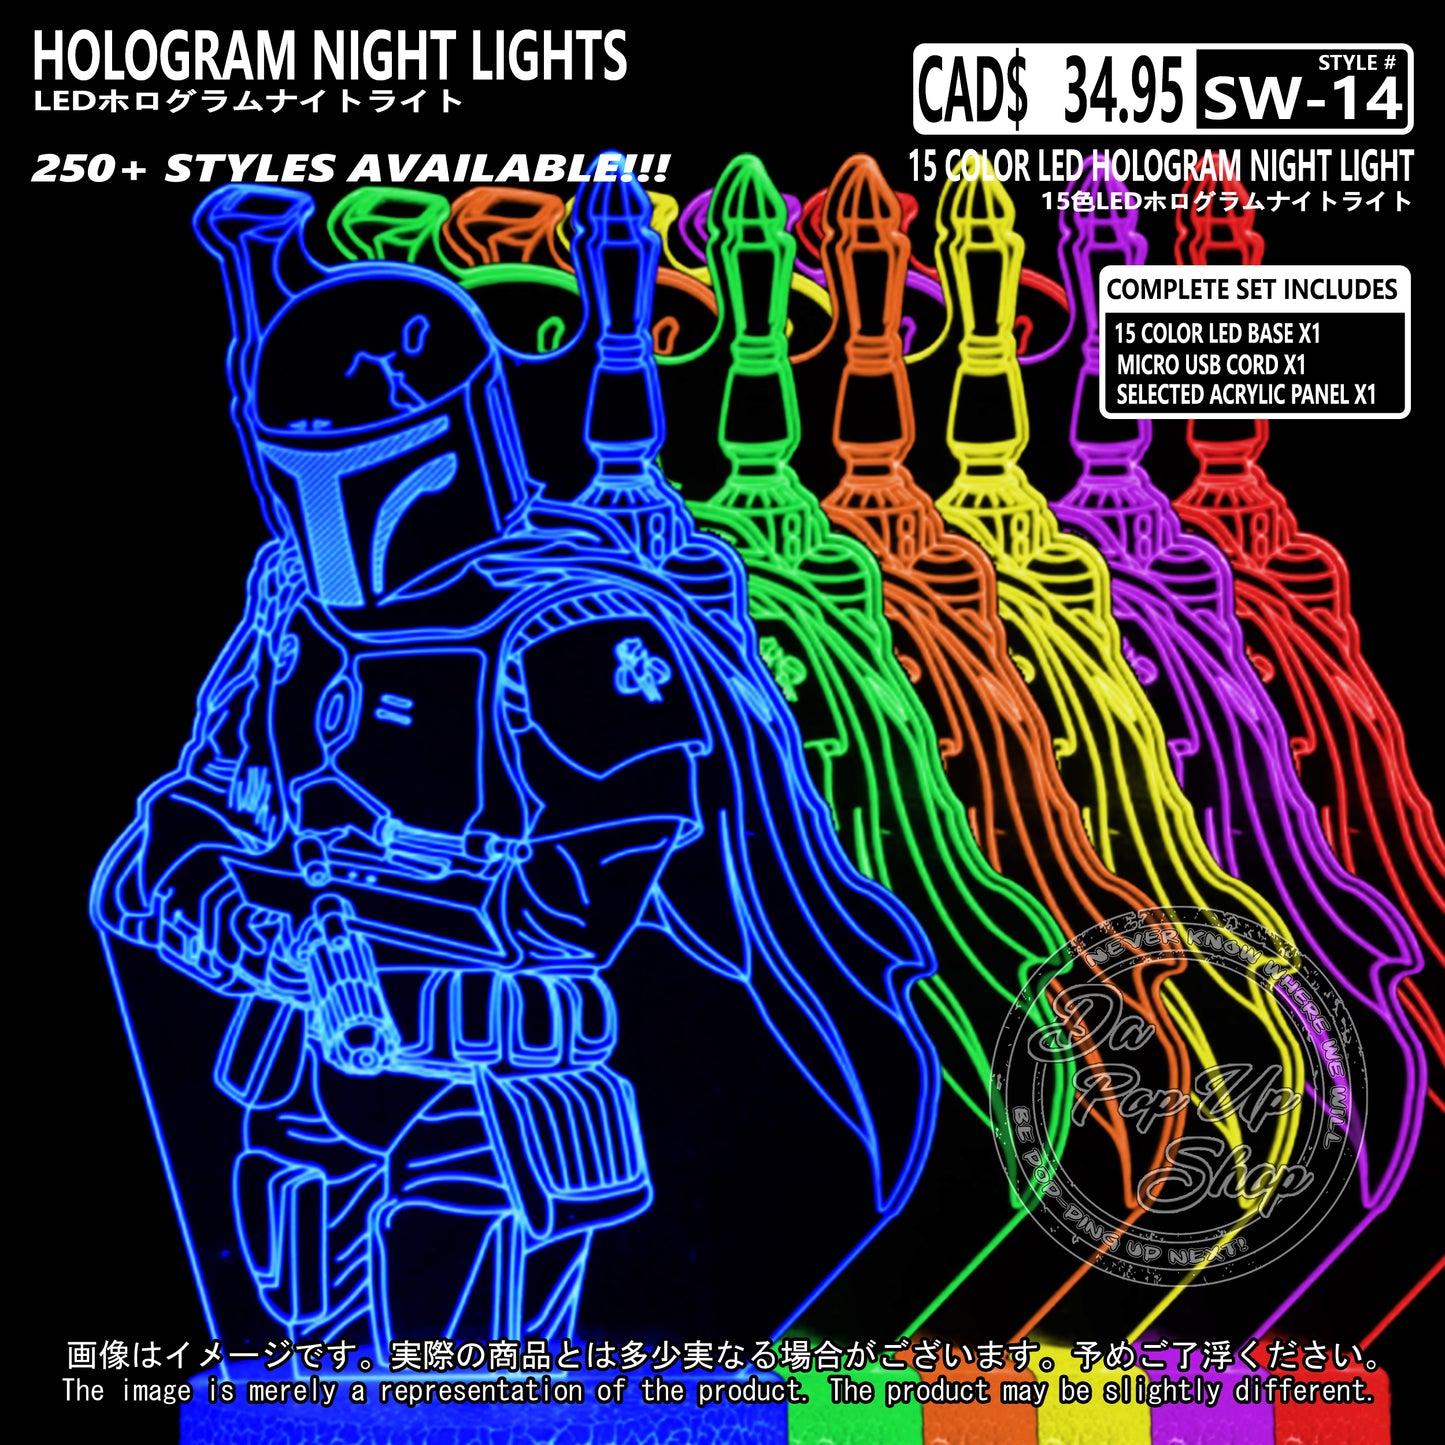 (SW-14) BOBA FETT Star Wars Hologram LED Night Light